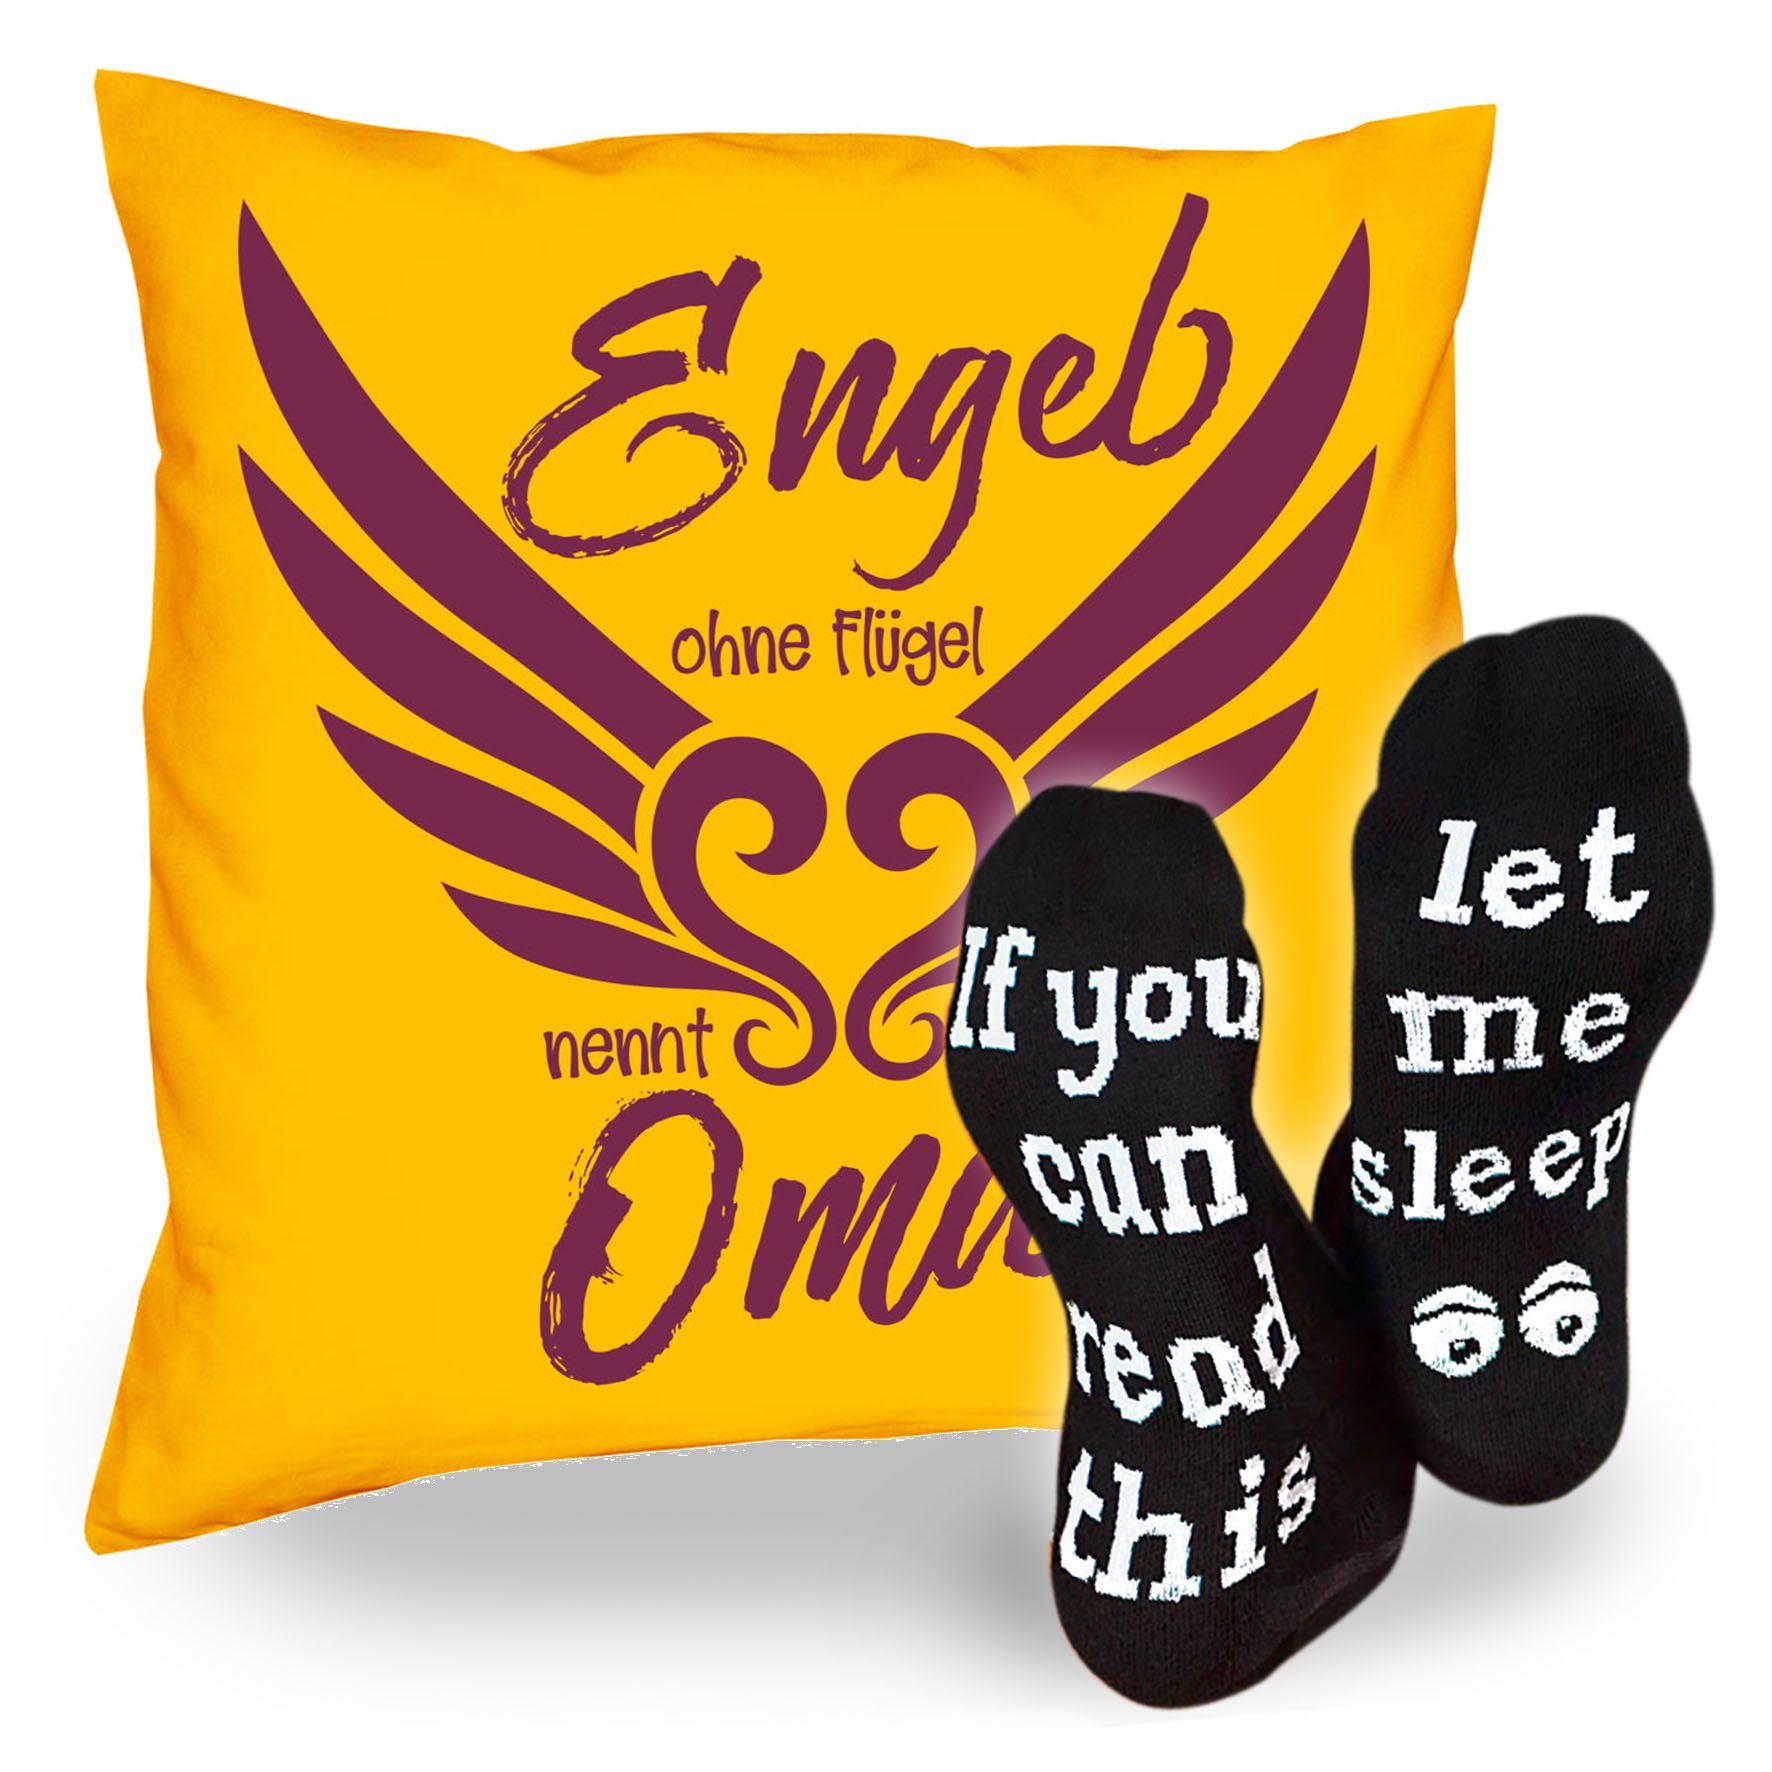 Soreso® Dekokissen Kissen Engel ohne Flügel nennt man Oma & Sprüche Socken Sleep, Geschenk Geburtstagsgeschenk gelb